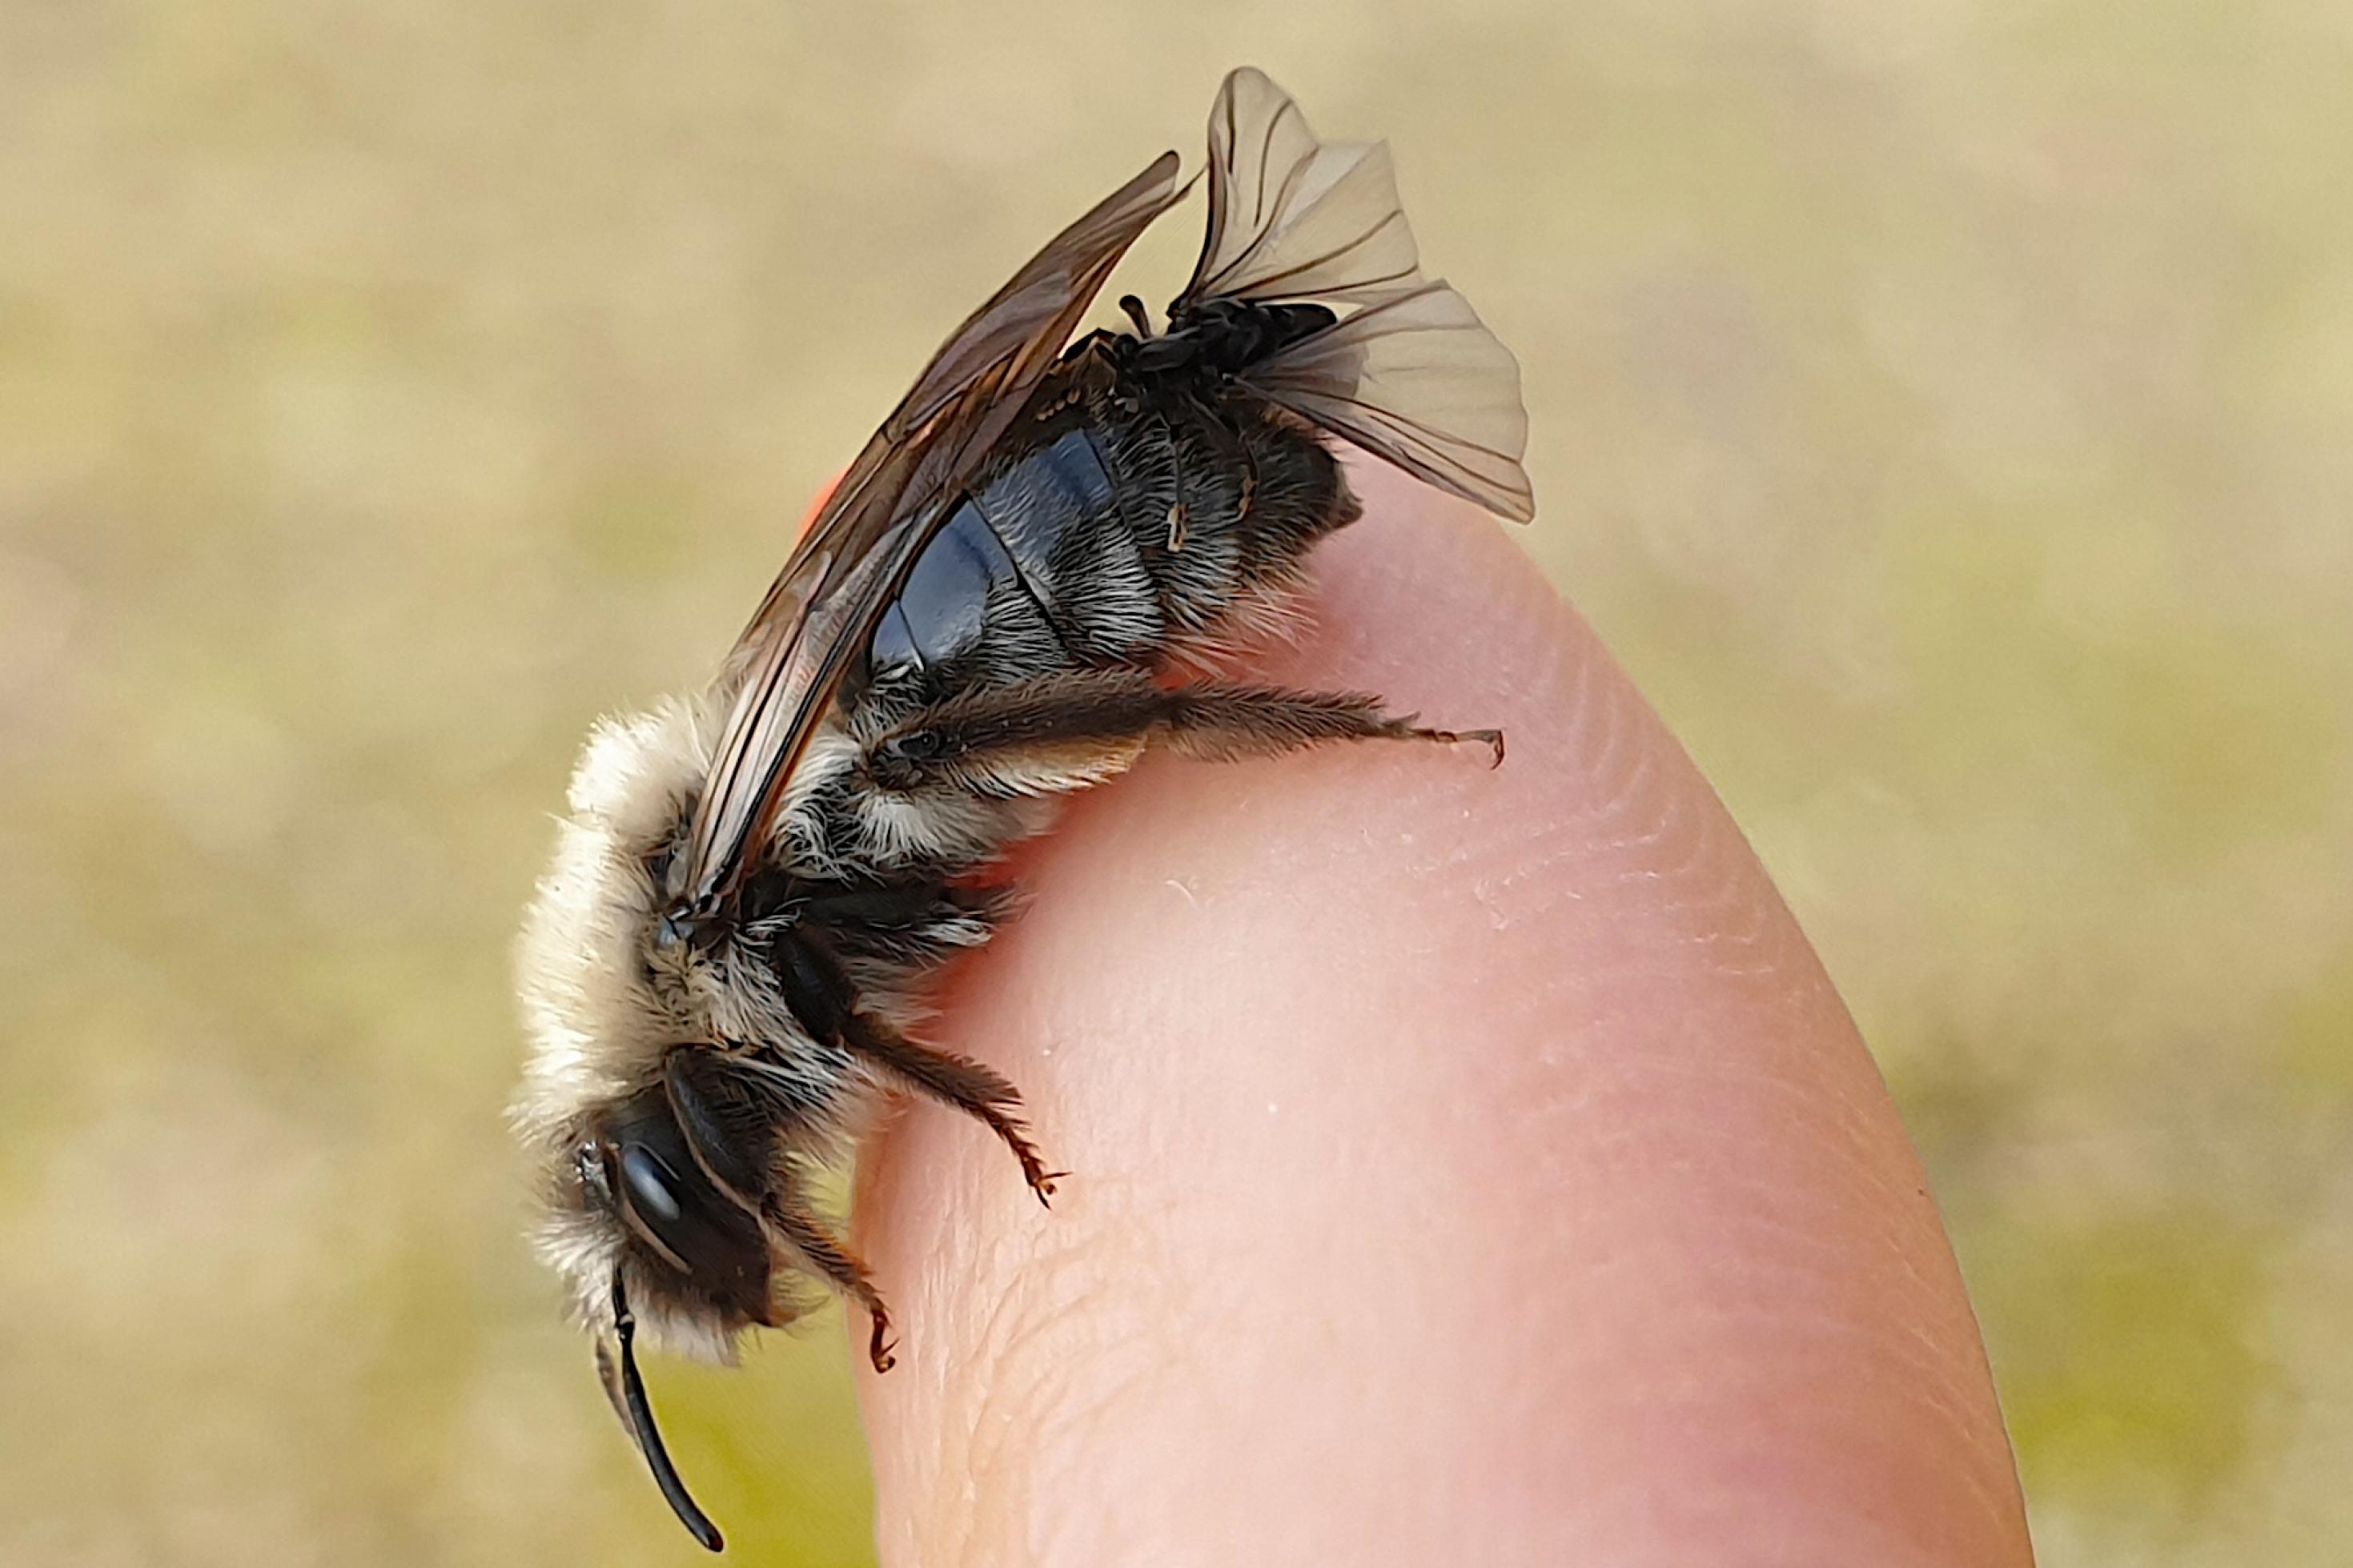 Auf dem Finger einer Person sitzt eine hellbraun-schwarze Biene. An deren Hinterleib sitzt ein Fliegen-artiges, schwarzes Insekt.